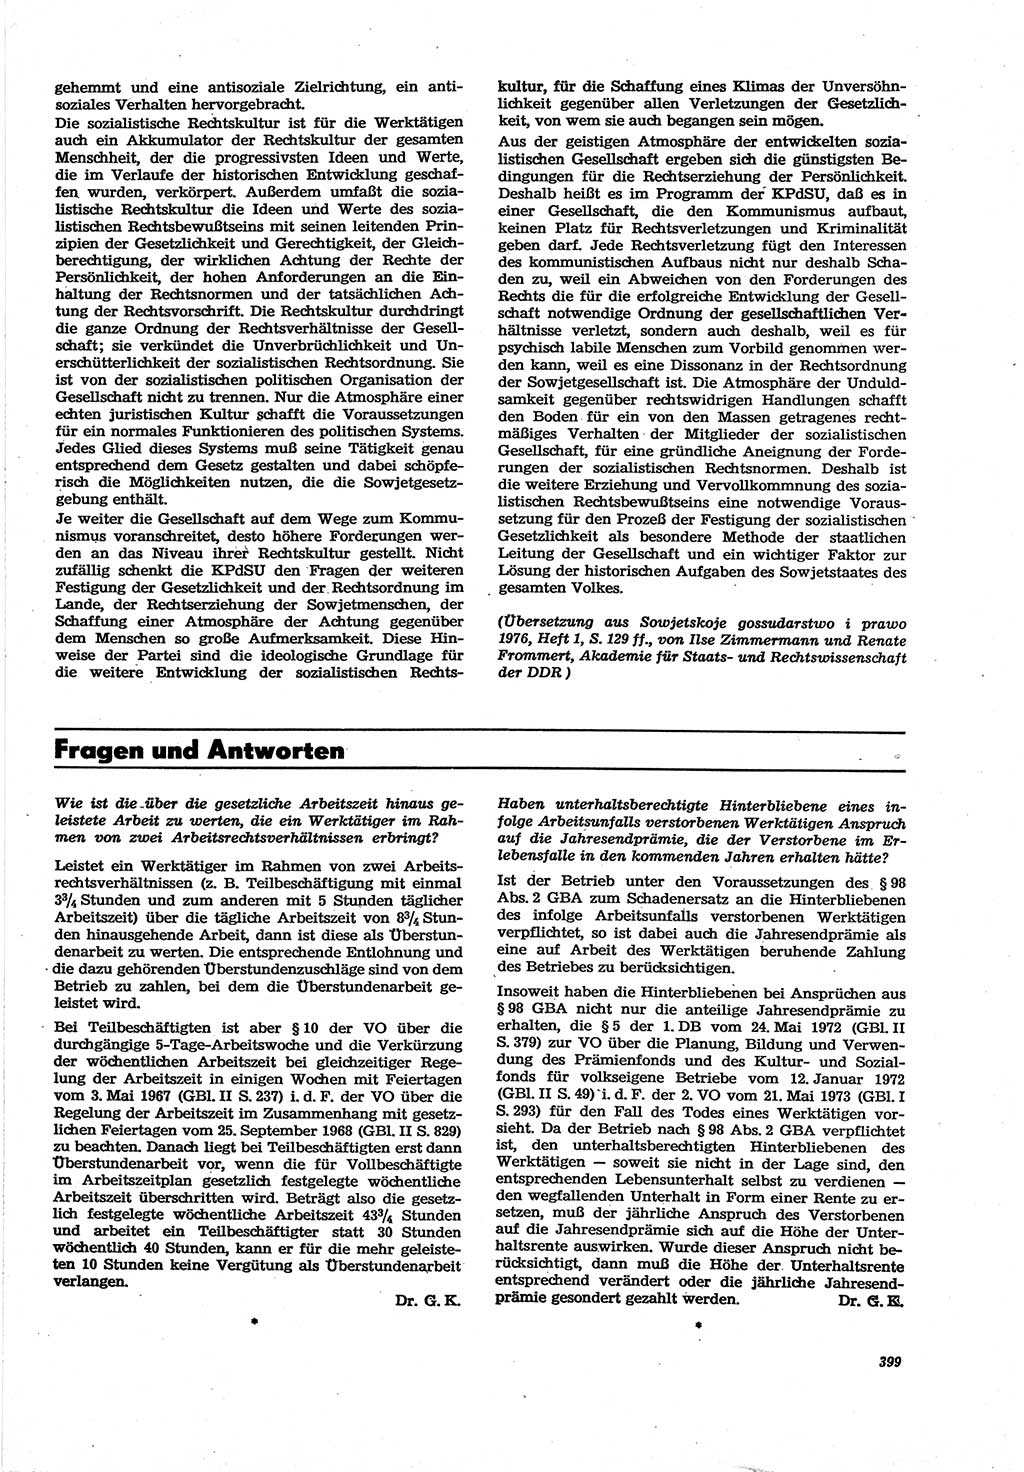 Neue Justiz (NJ), Zeitschrift für Recht und Rechtswissenschaft [Deutsche Demokratische Republik (DDR)], 30. Jahrgang 1976, Seite 399 (NJ DDR 1976, S. 399)